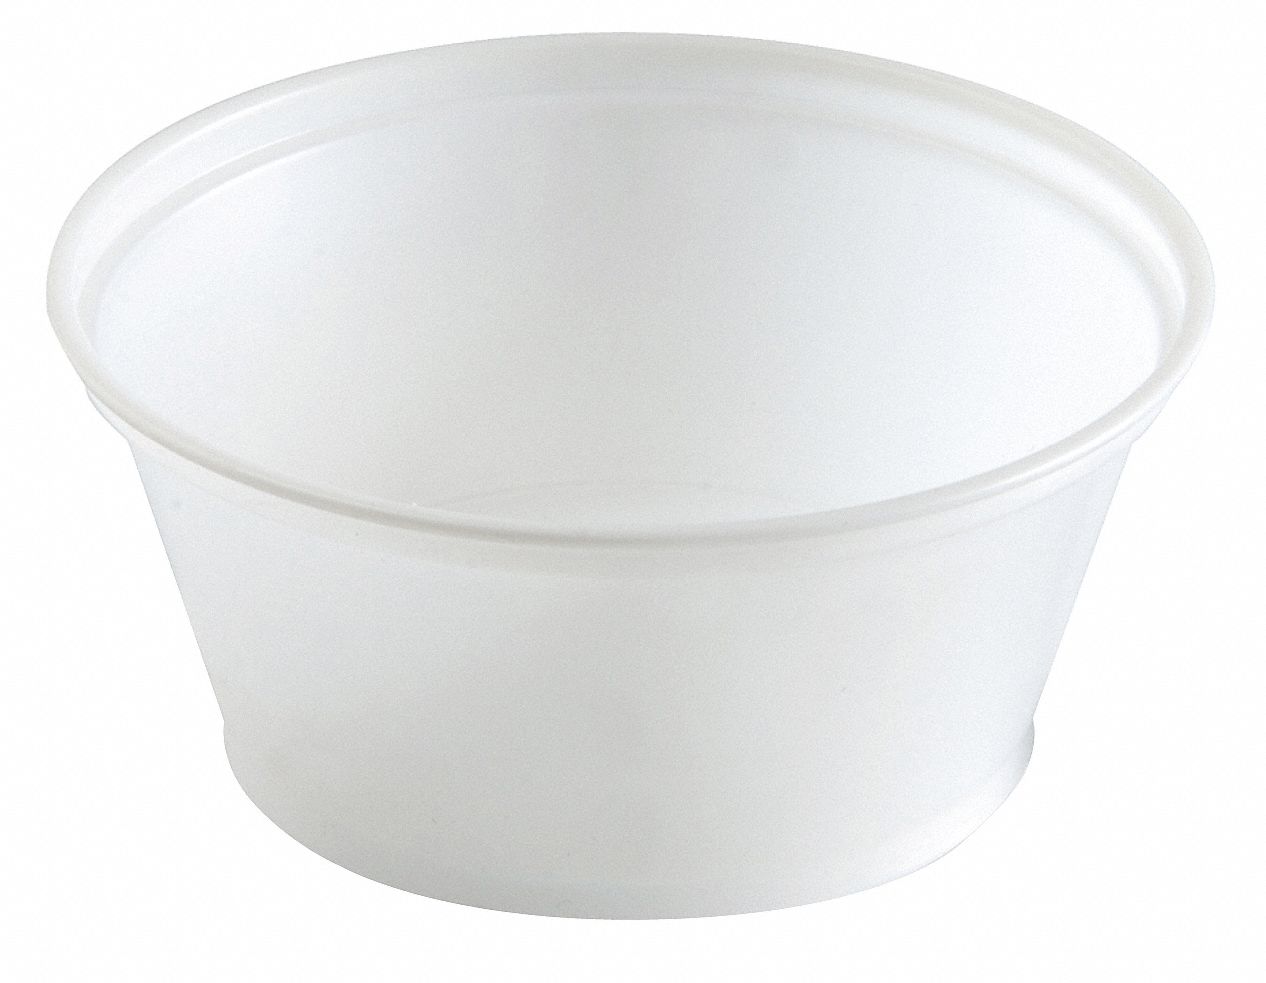 DIXIE 3.25 oz. Souffle Cup, Translucent Plastic, 2400 PK   Souffle and Portion Cups   15J233|P032TRANSLUC